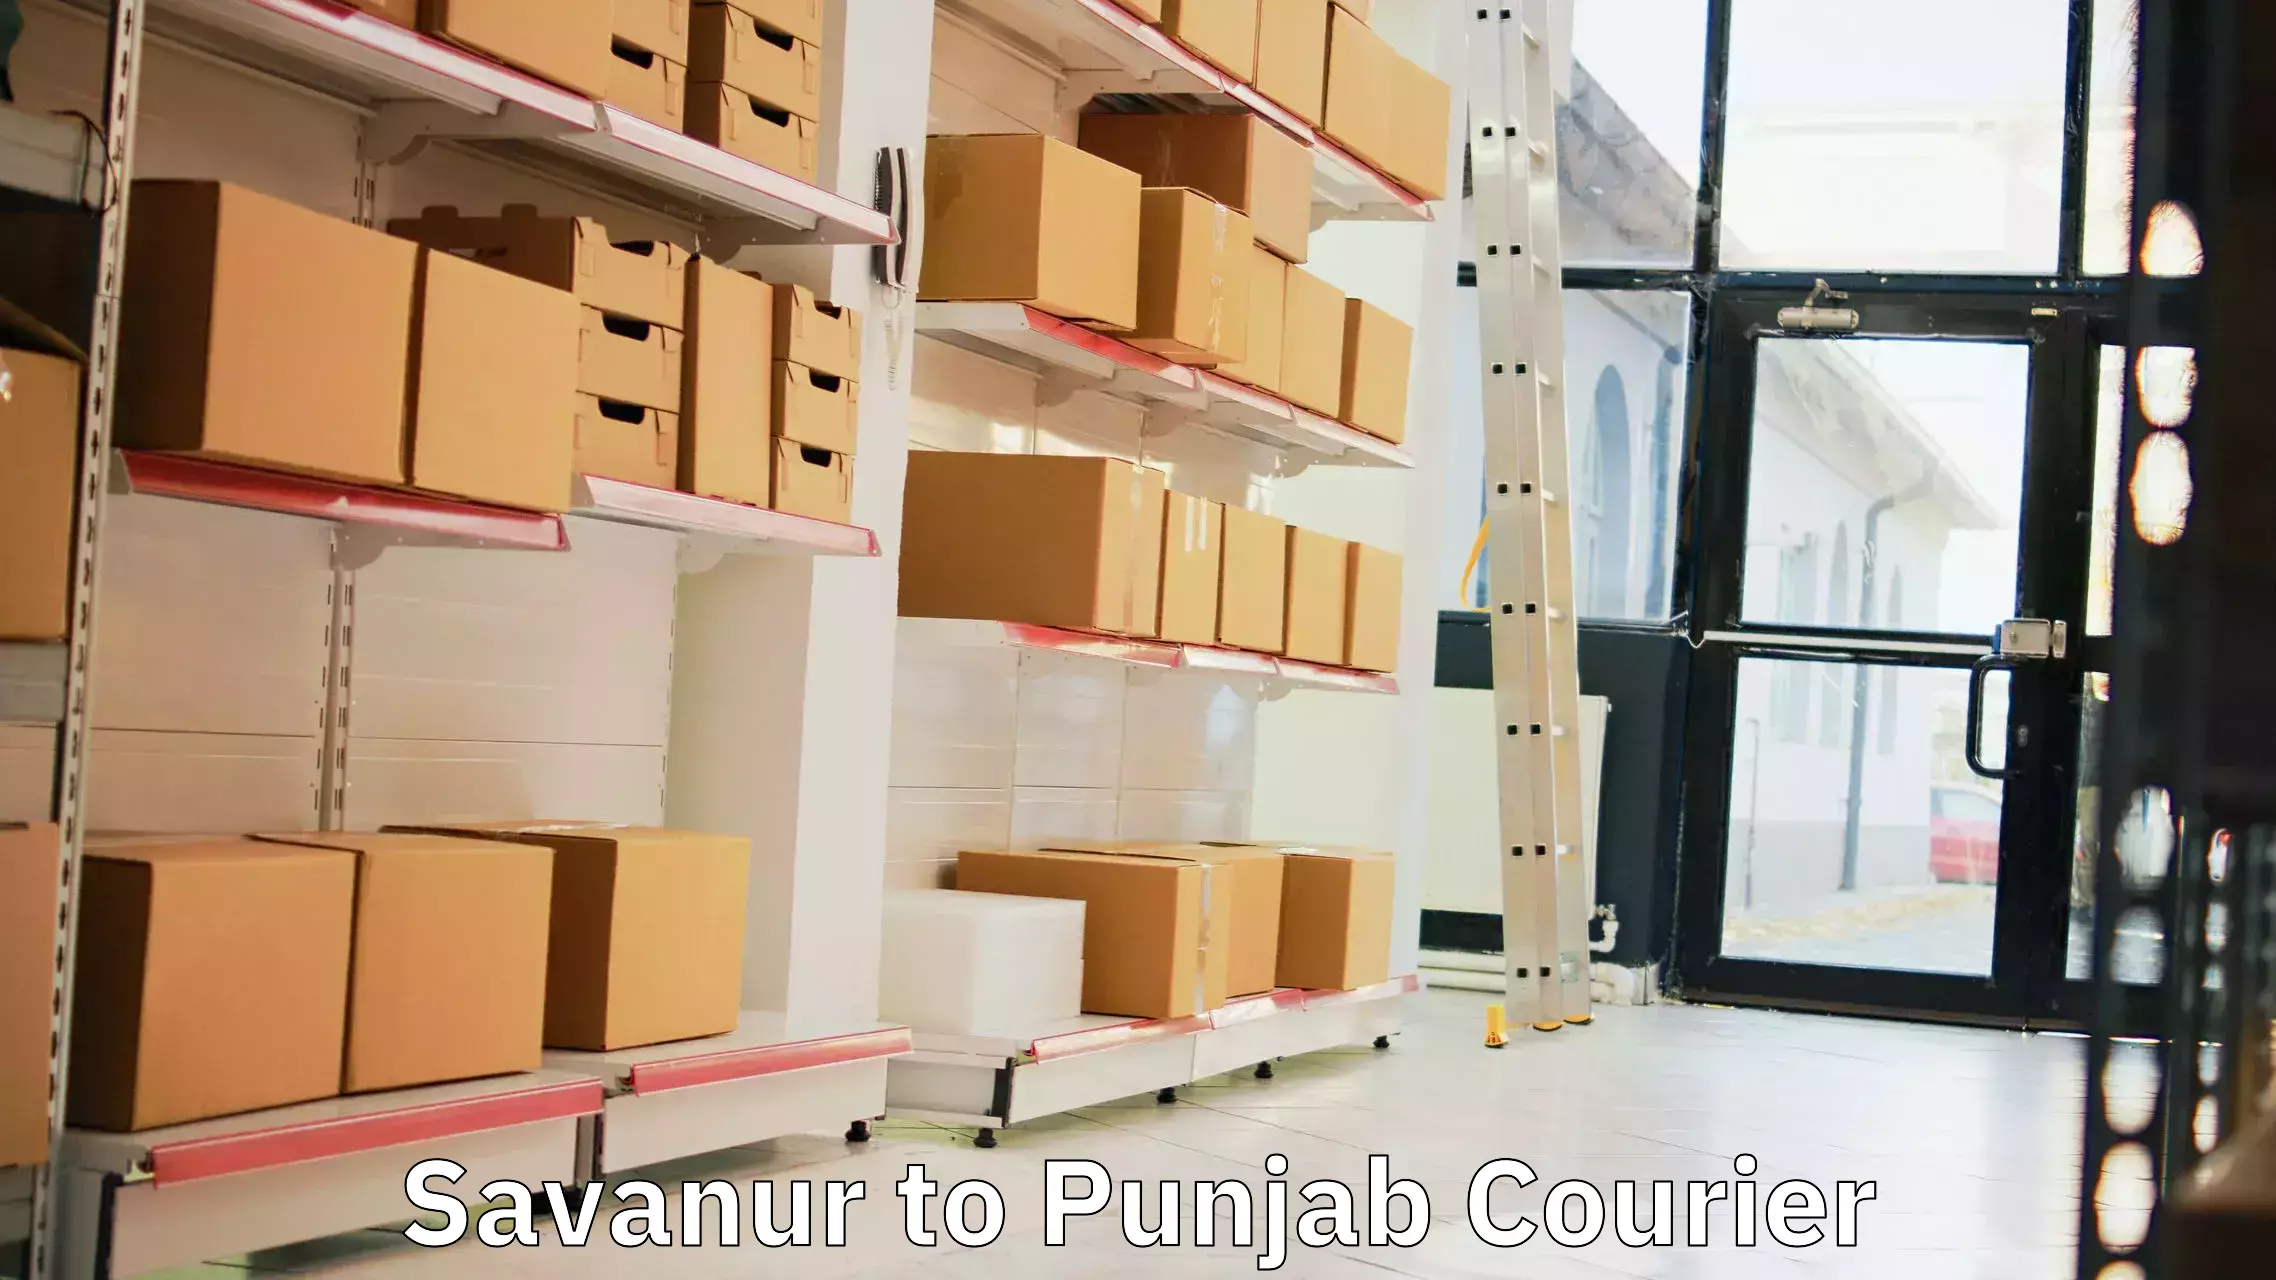 Tailored shipping plans Savanur to Punjab